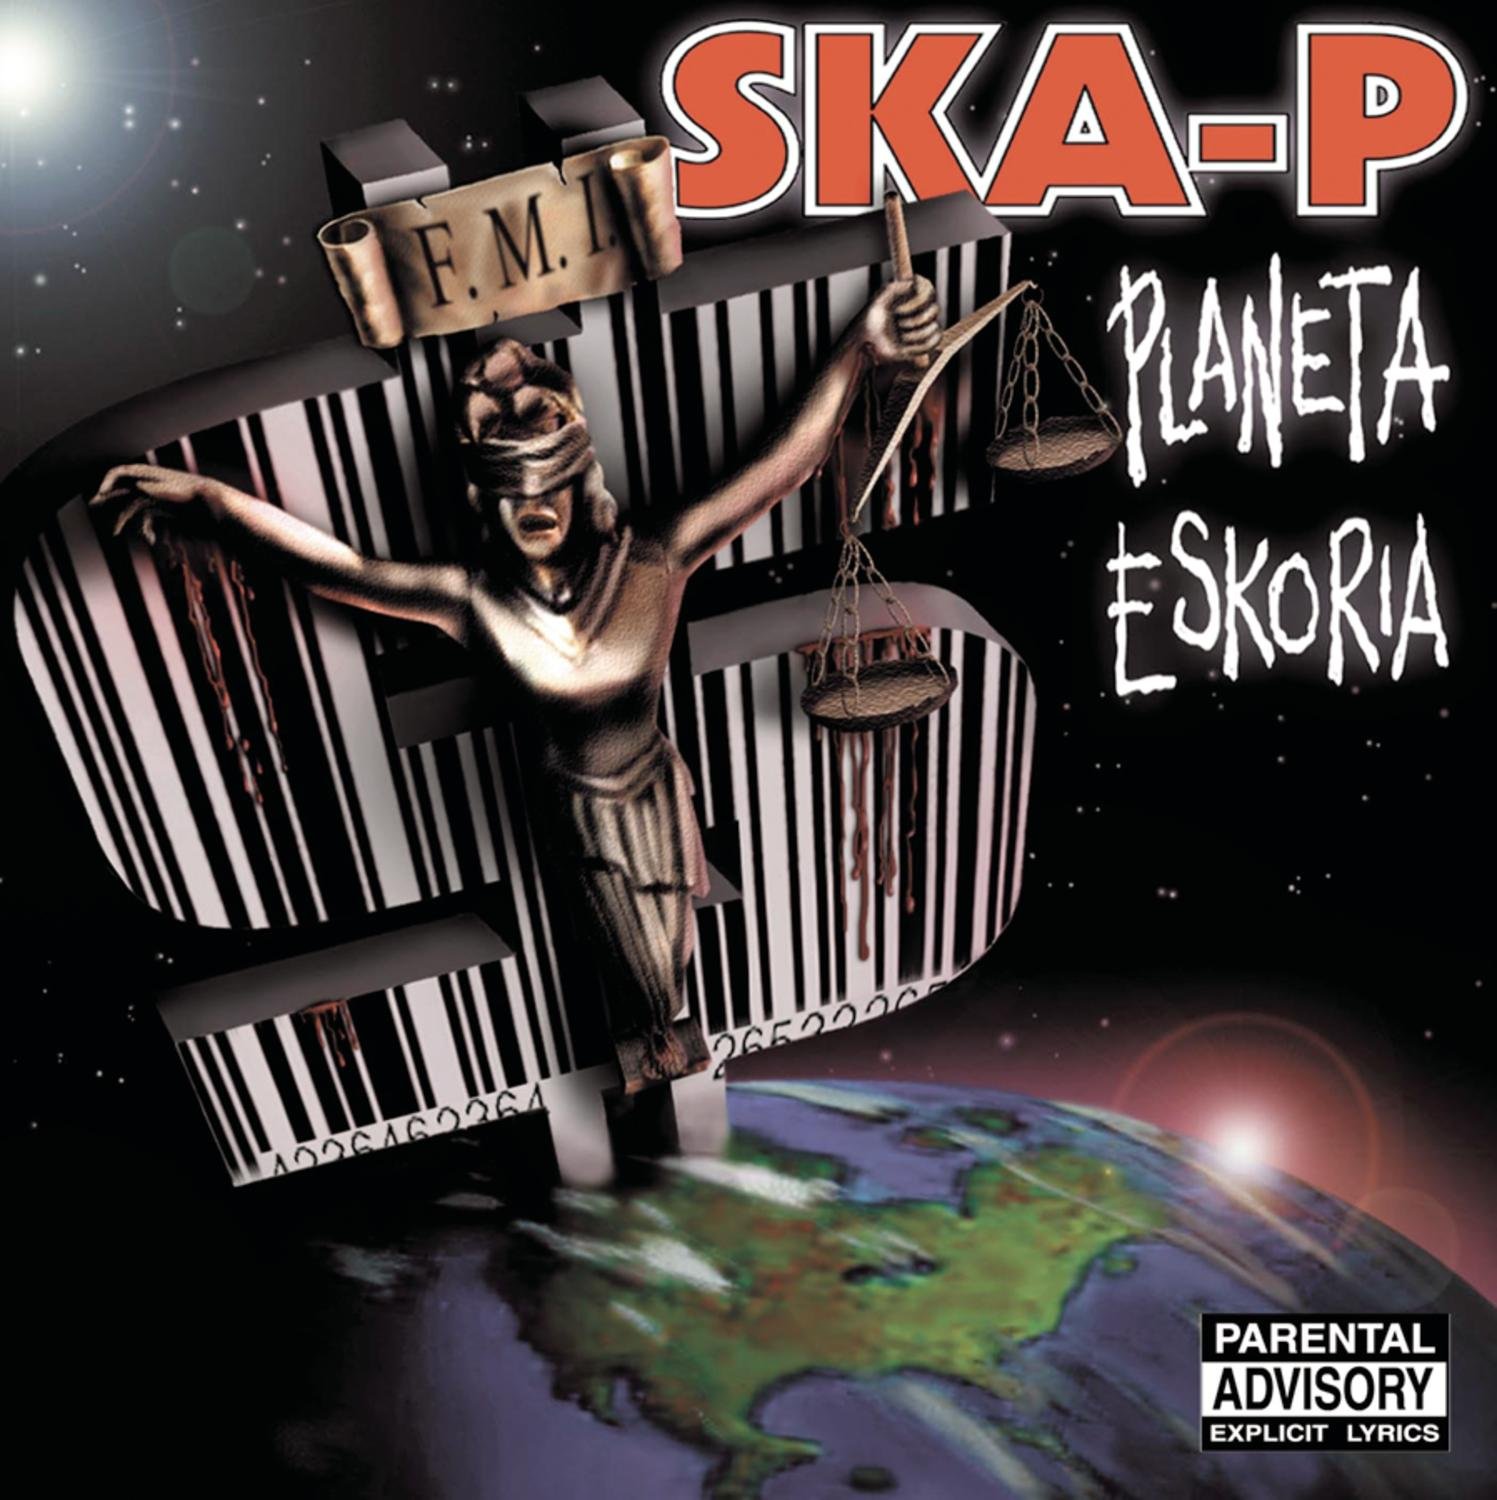 Ska-P, Planeta Eskoria, CD